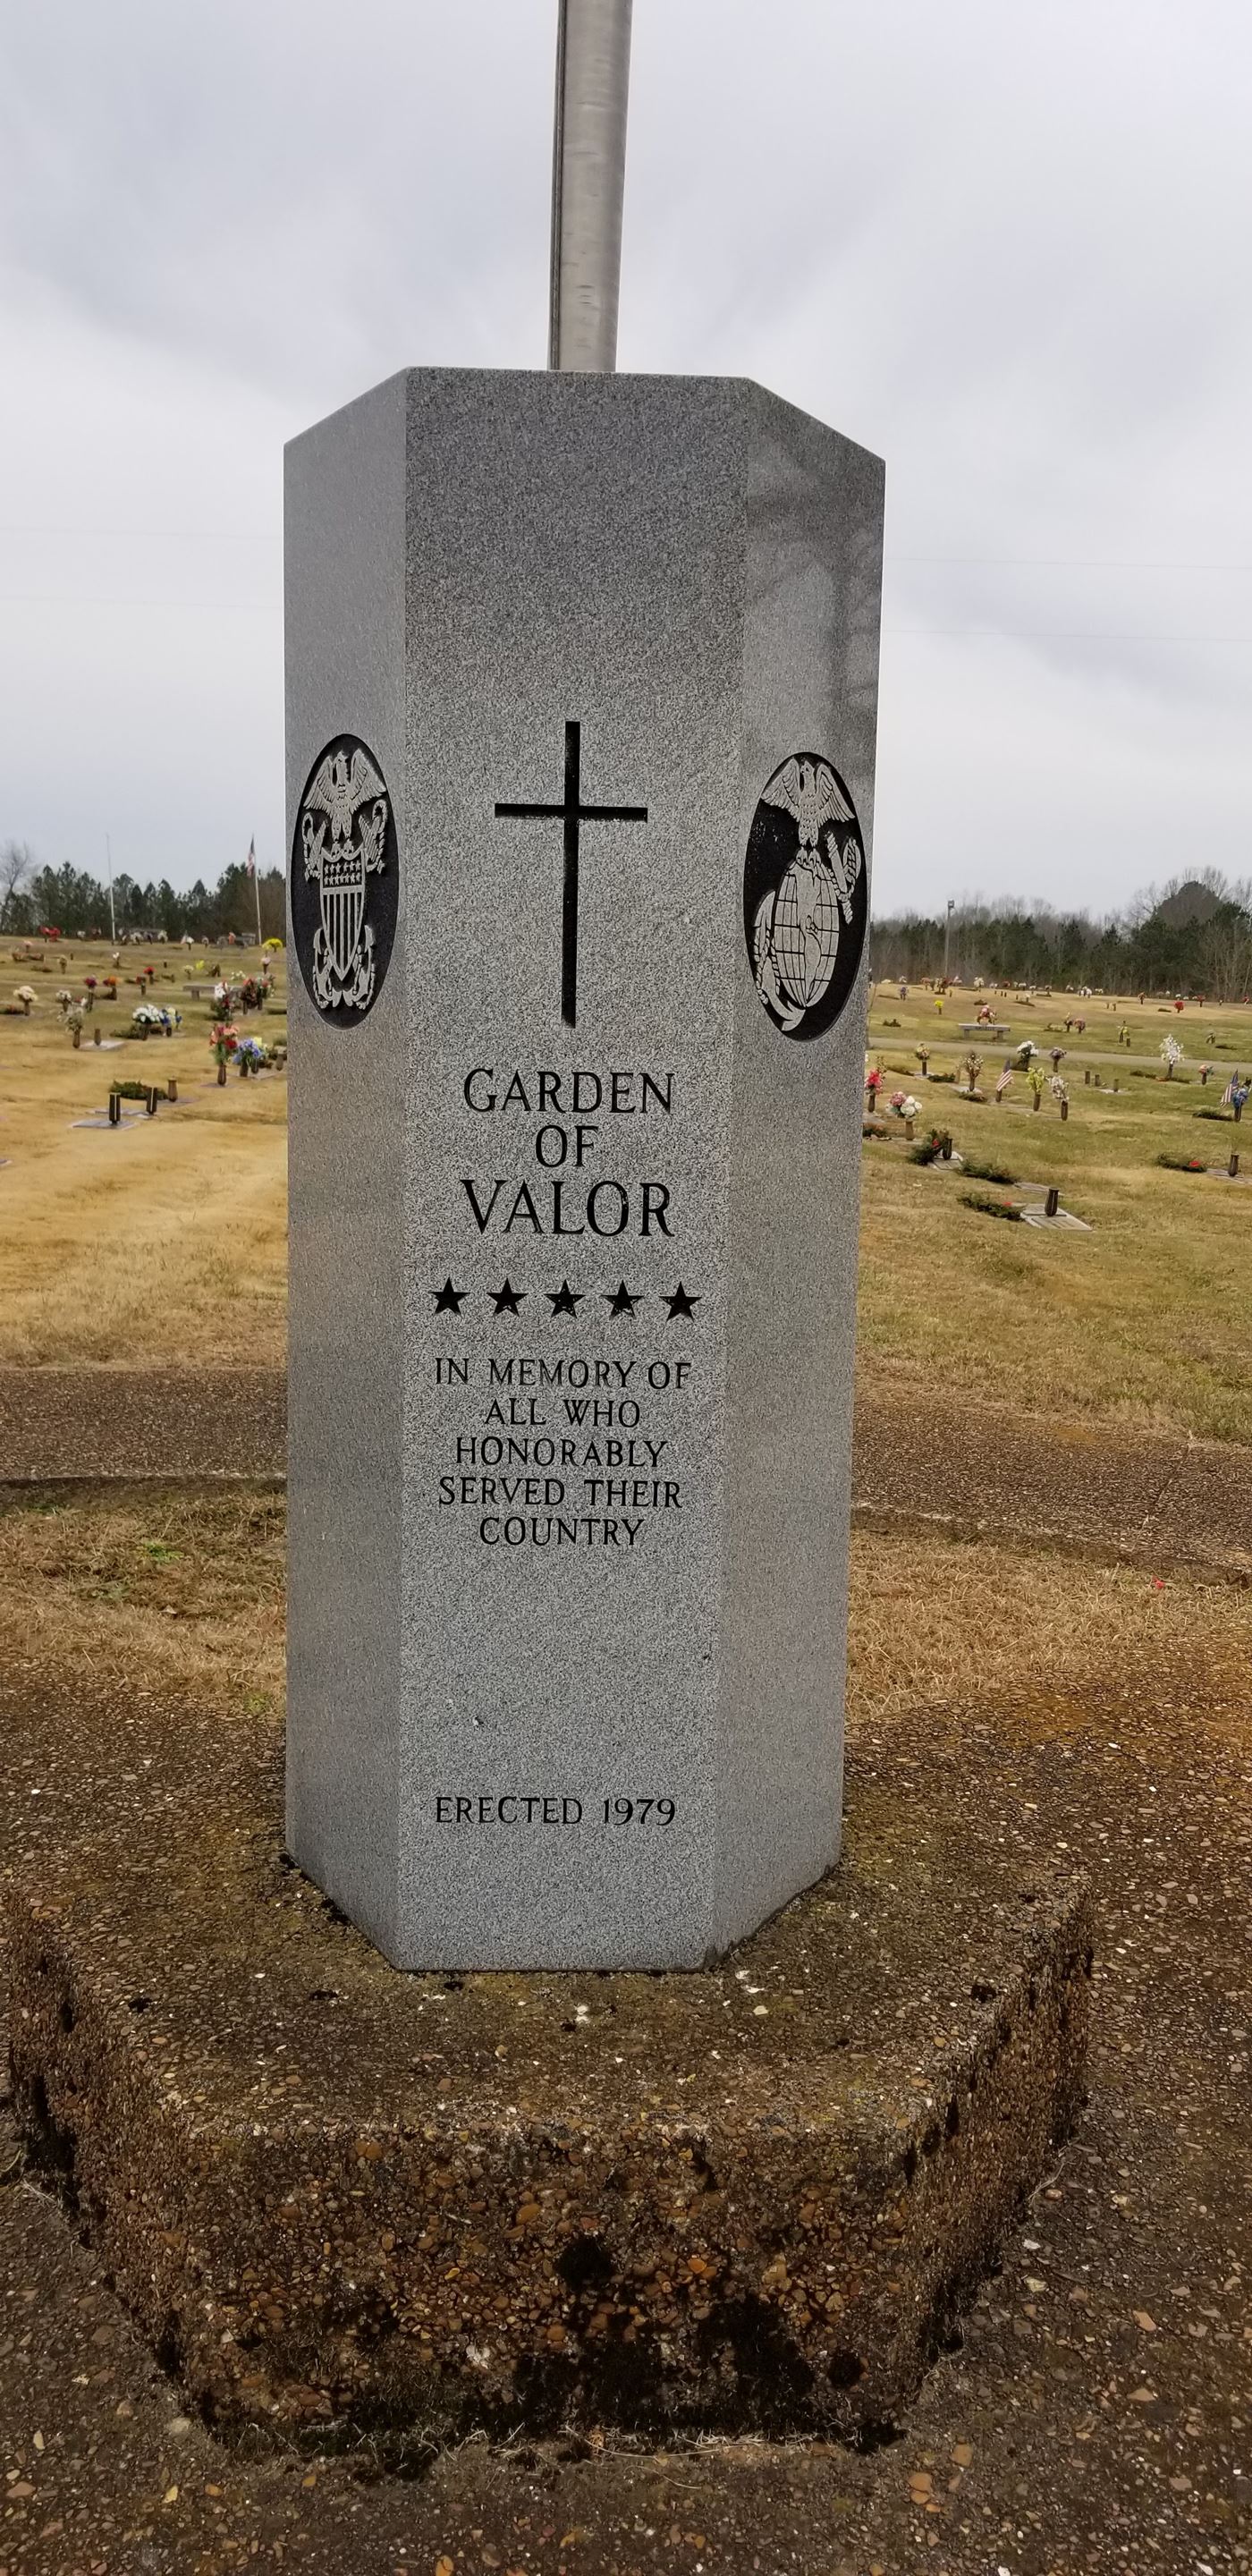 Garden of Valor Resthaven Memorial Gardens Cemetery